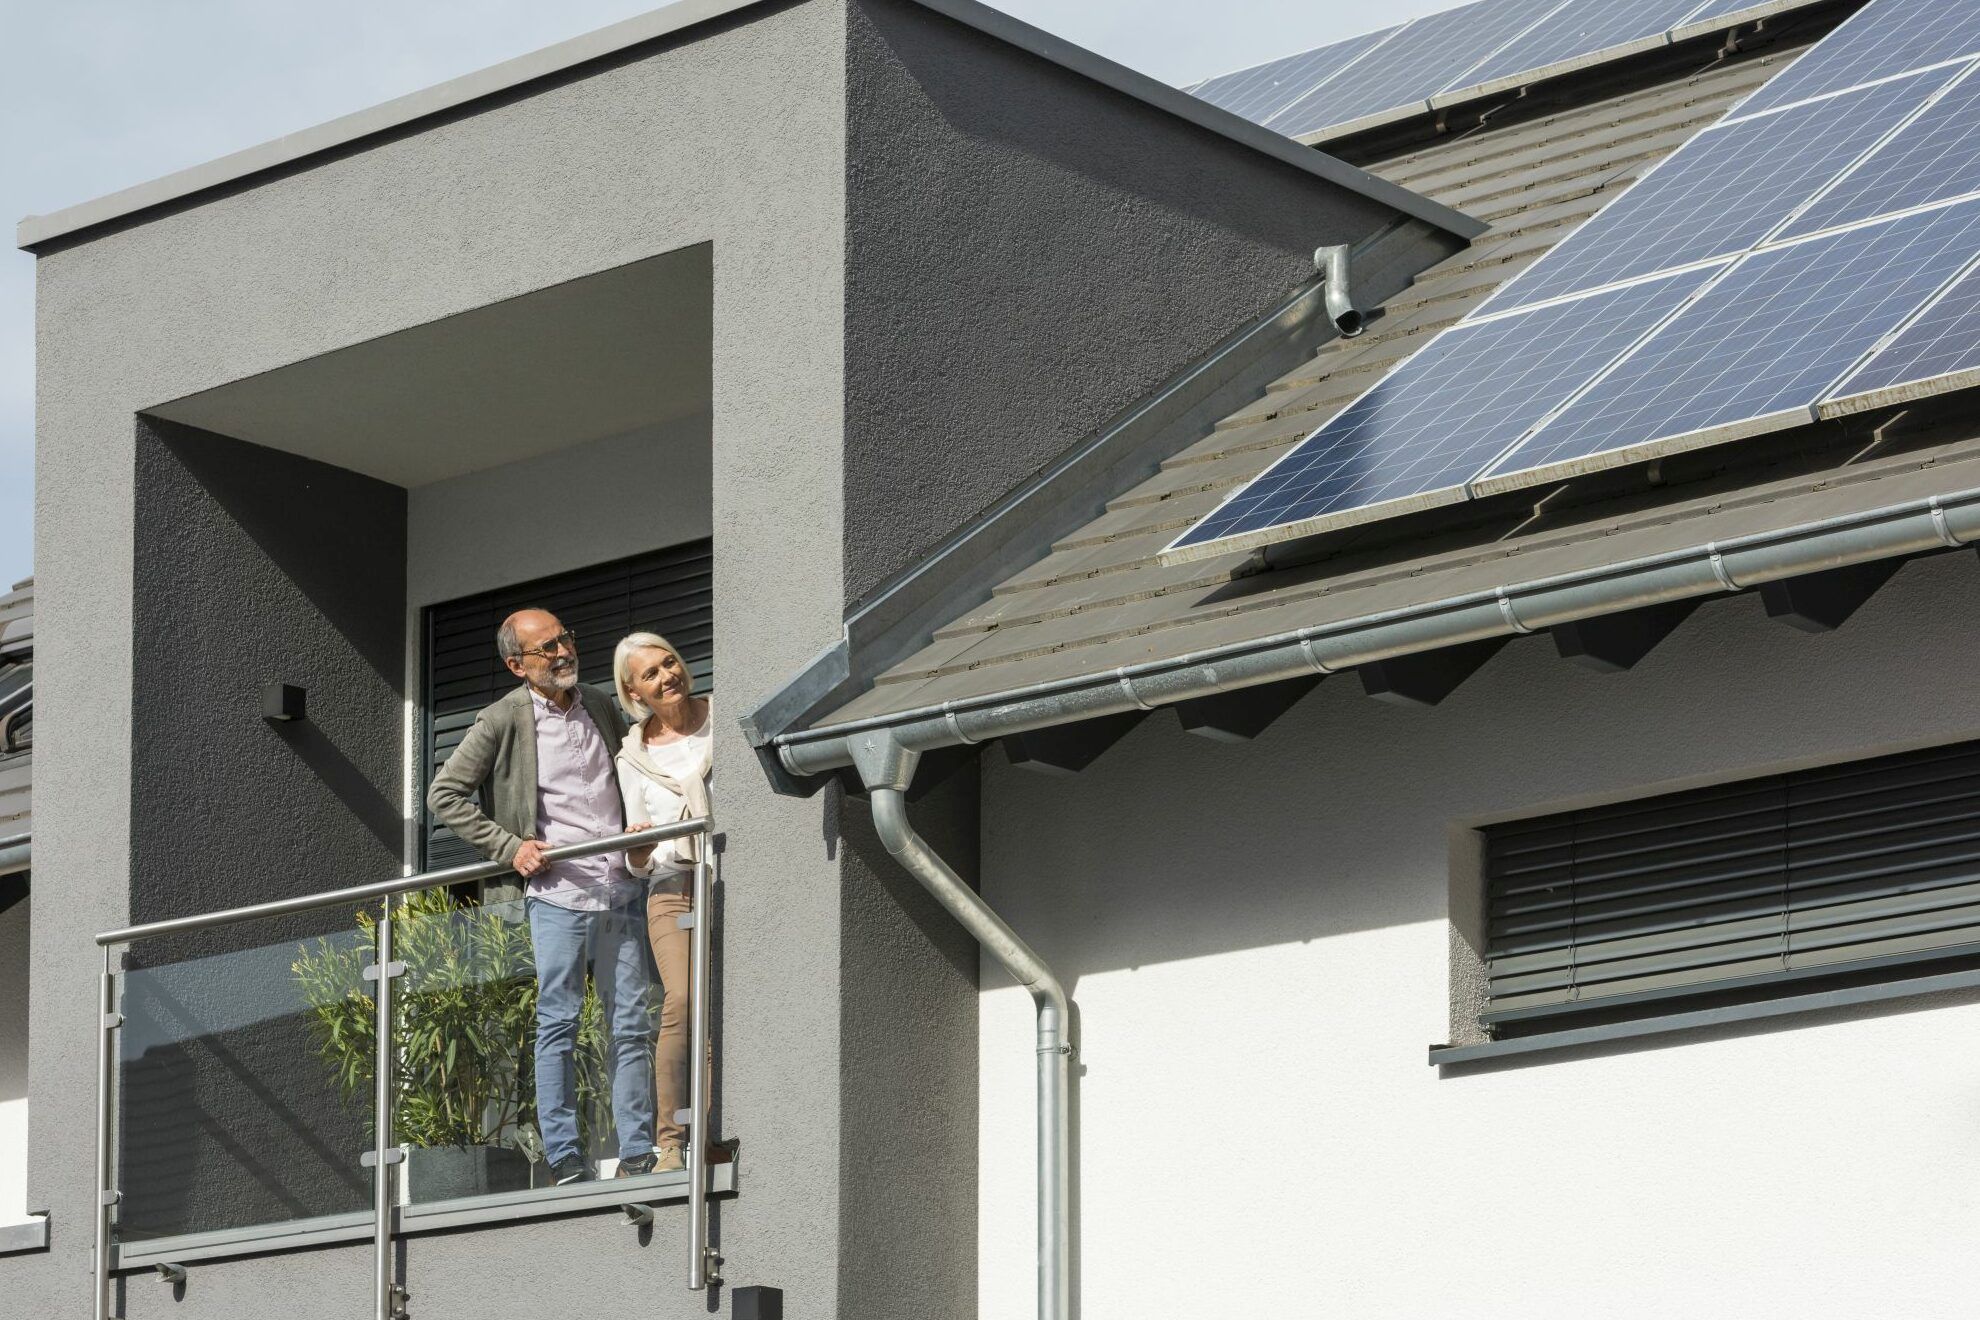 
    
            
                    Ab 1. Januar 2023 greift die Solarpflicht im Südwesten auch für bestehende Gebäude – wenn das Dach grundlegend saniert wird
                
        
